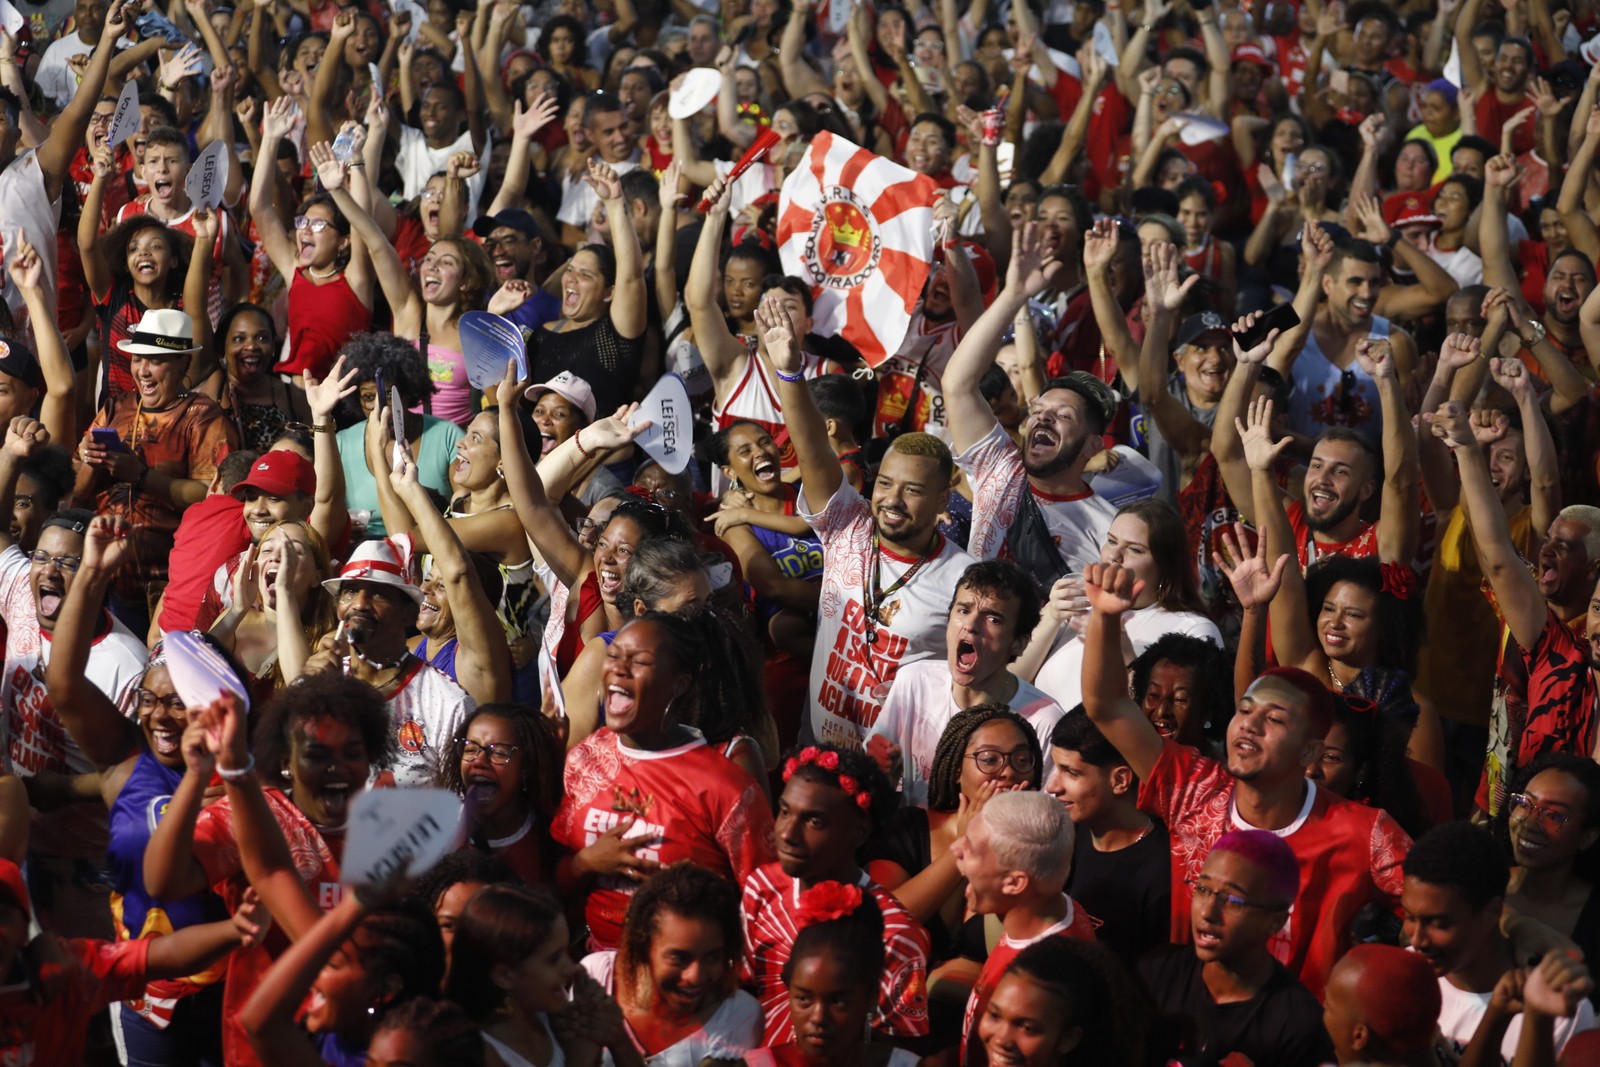 Torcida da Viradouro: a vermelho e branco de Niterói está na briga pelo título de campeão do carnaval carioca — Foto: Guito Moreto